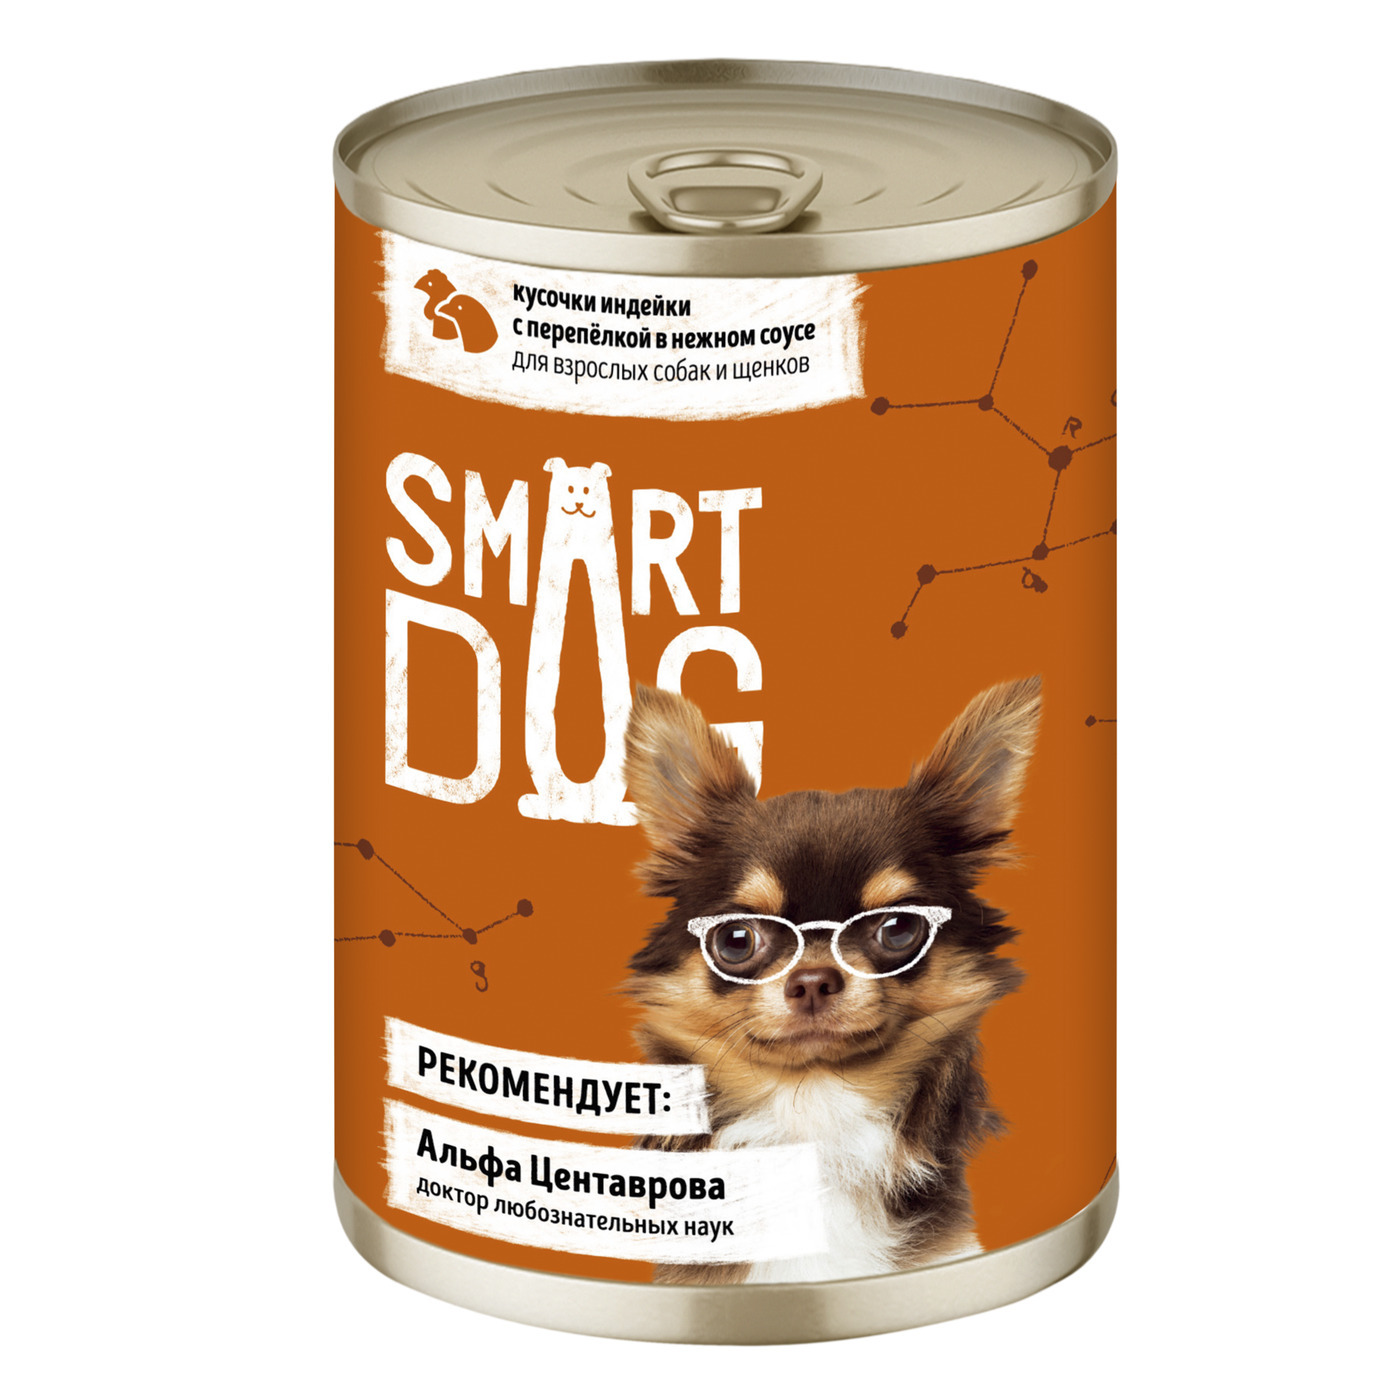 Корм для собак в соусе. Смарт дог консервы для собак. Корм Smart Dog для щенков. Консервный корм для собак с индейкой. Smart Dog консервы фото.